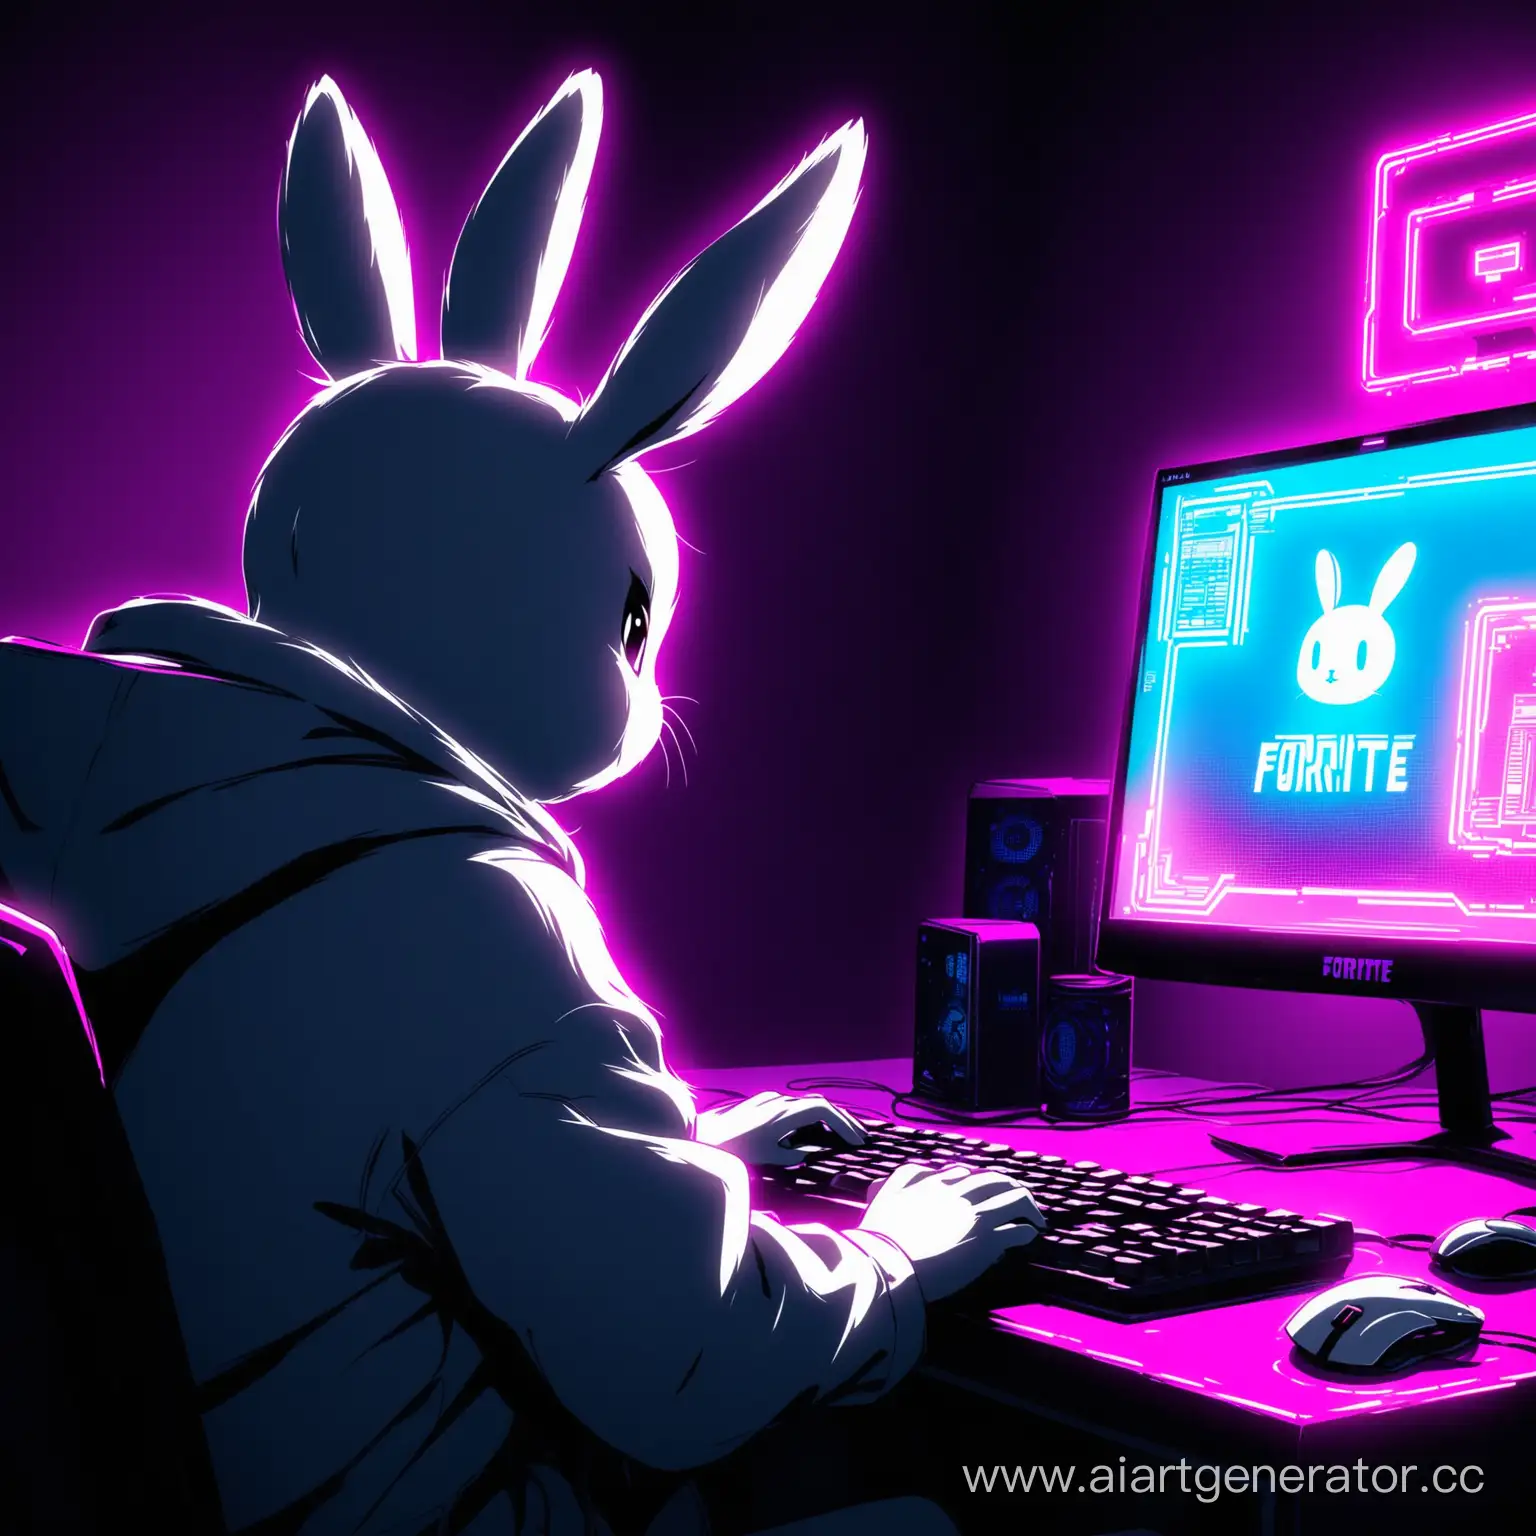 кролик черно-белый сидит за компьютером и играет в fortite зади него неоновая подсветка
 